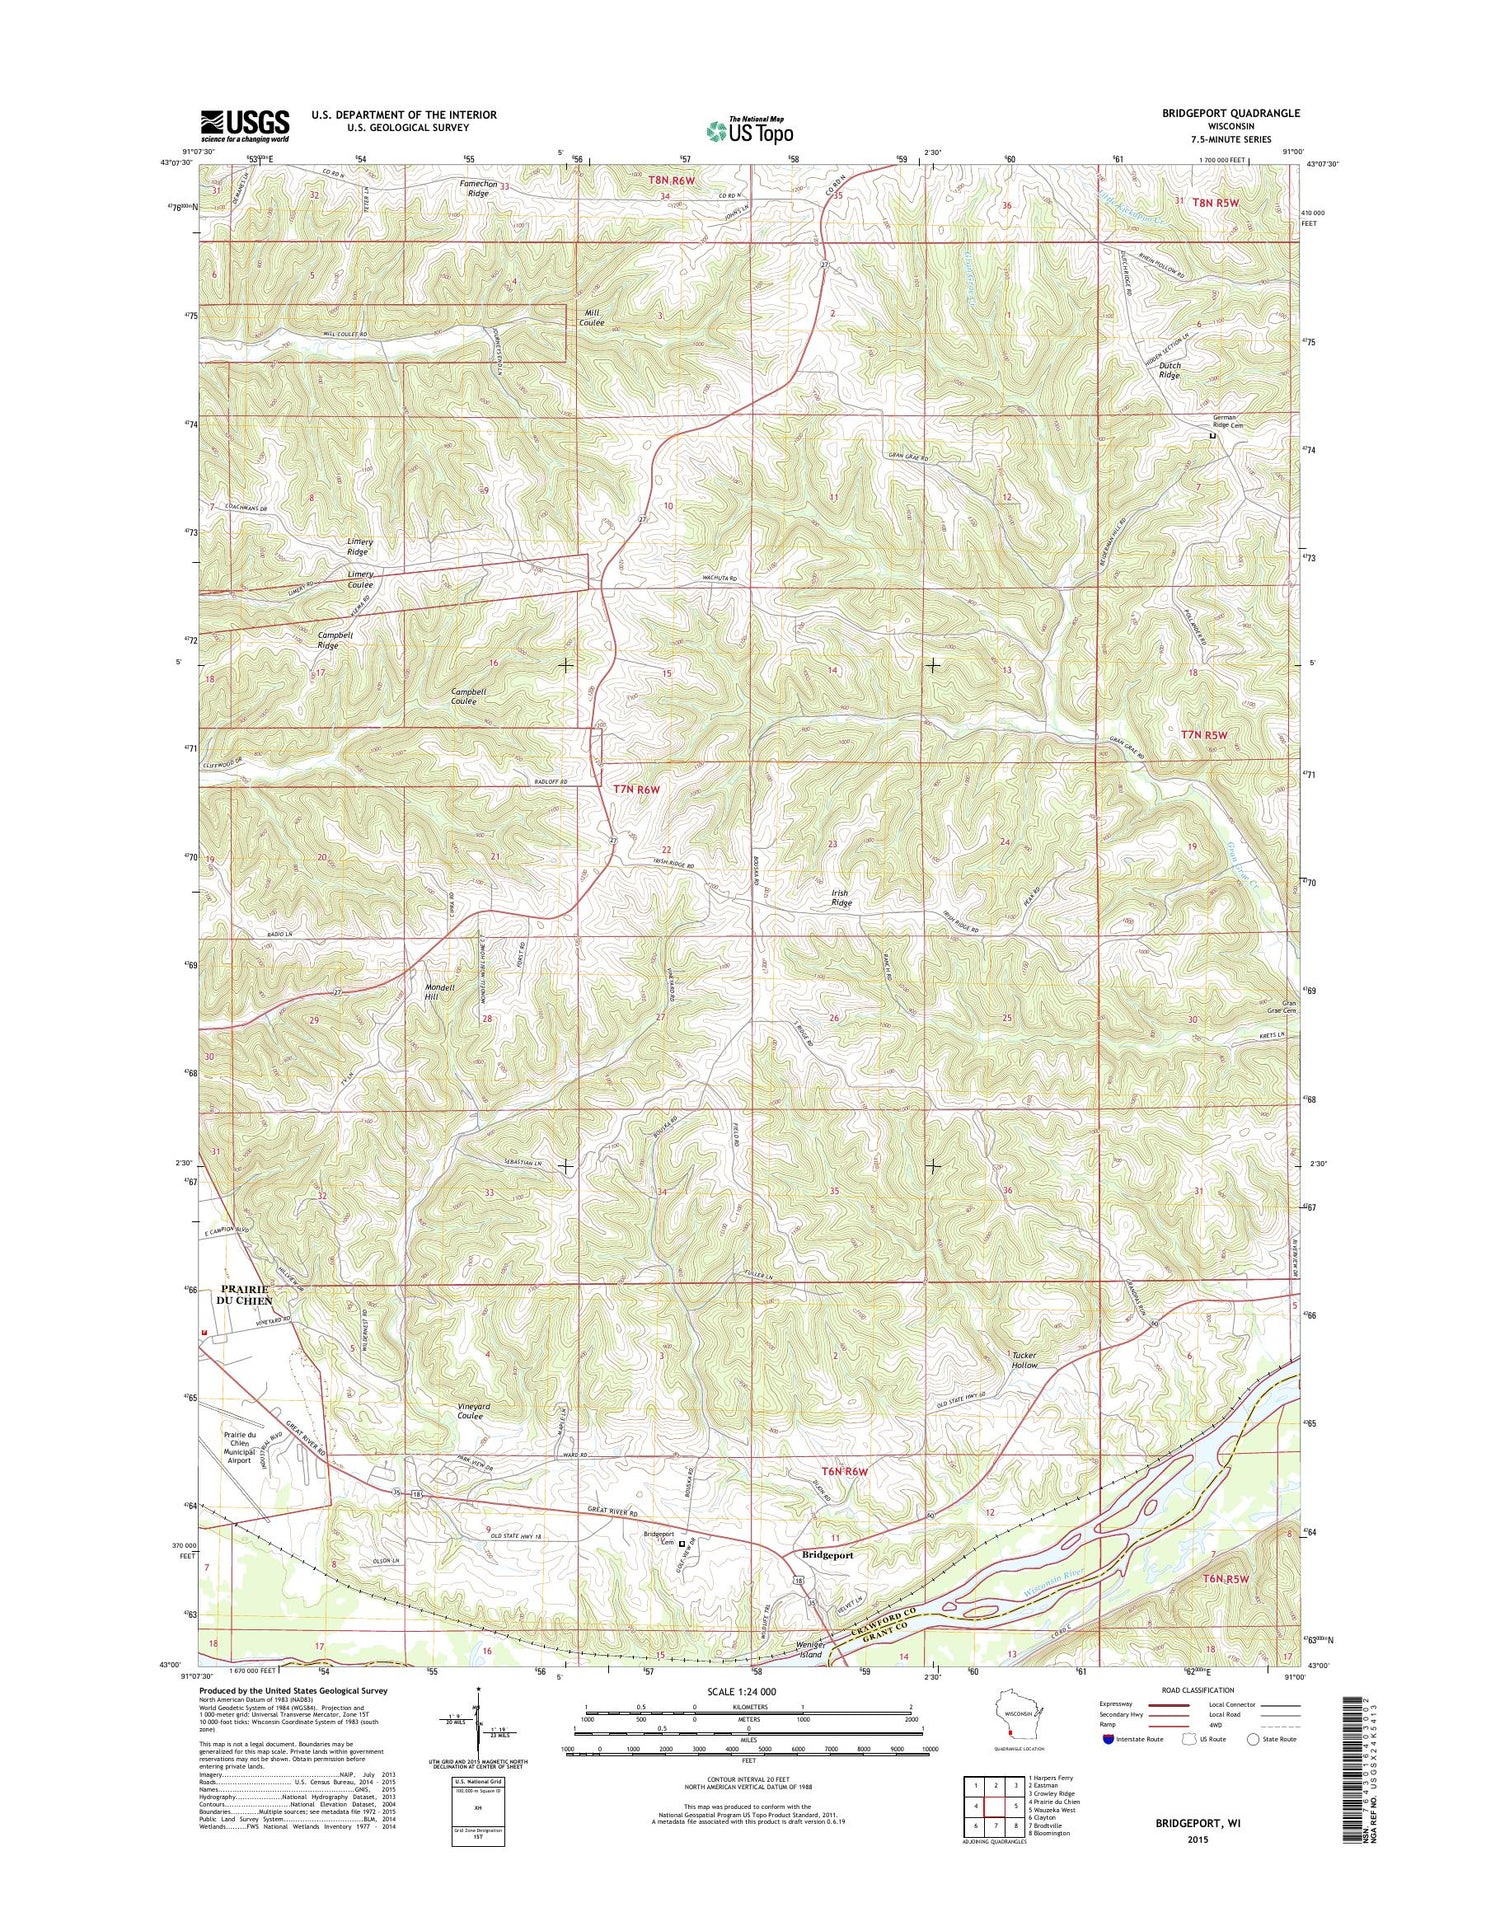 Bridgeport Wisconsin US Topo Map Image